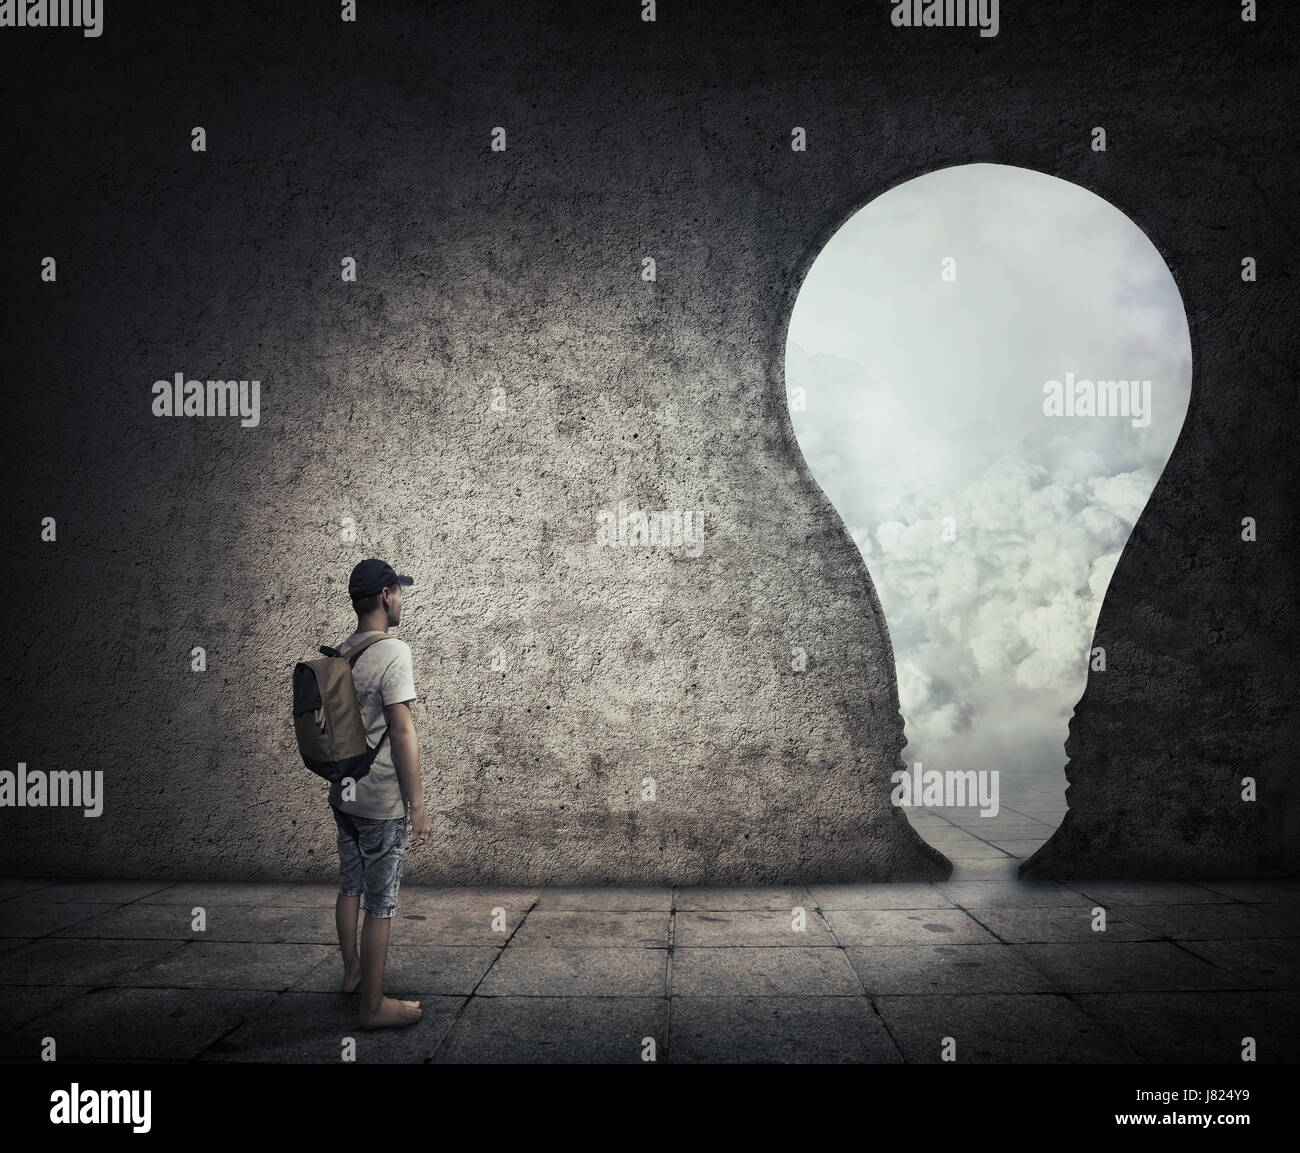 Image conceptuelle avec une personne debout dans une pièce sombre, en face d'une porte en forme d'ampoule. Échapper à l'occasion, l'entrée dans un autre monde. Banque D'Images